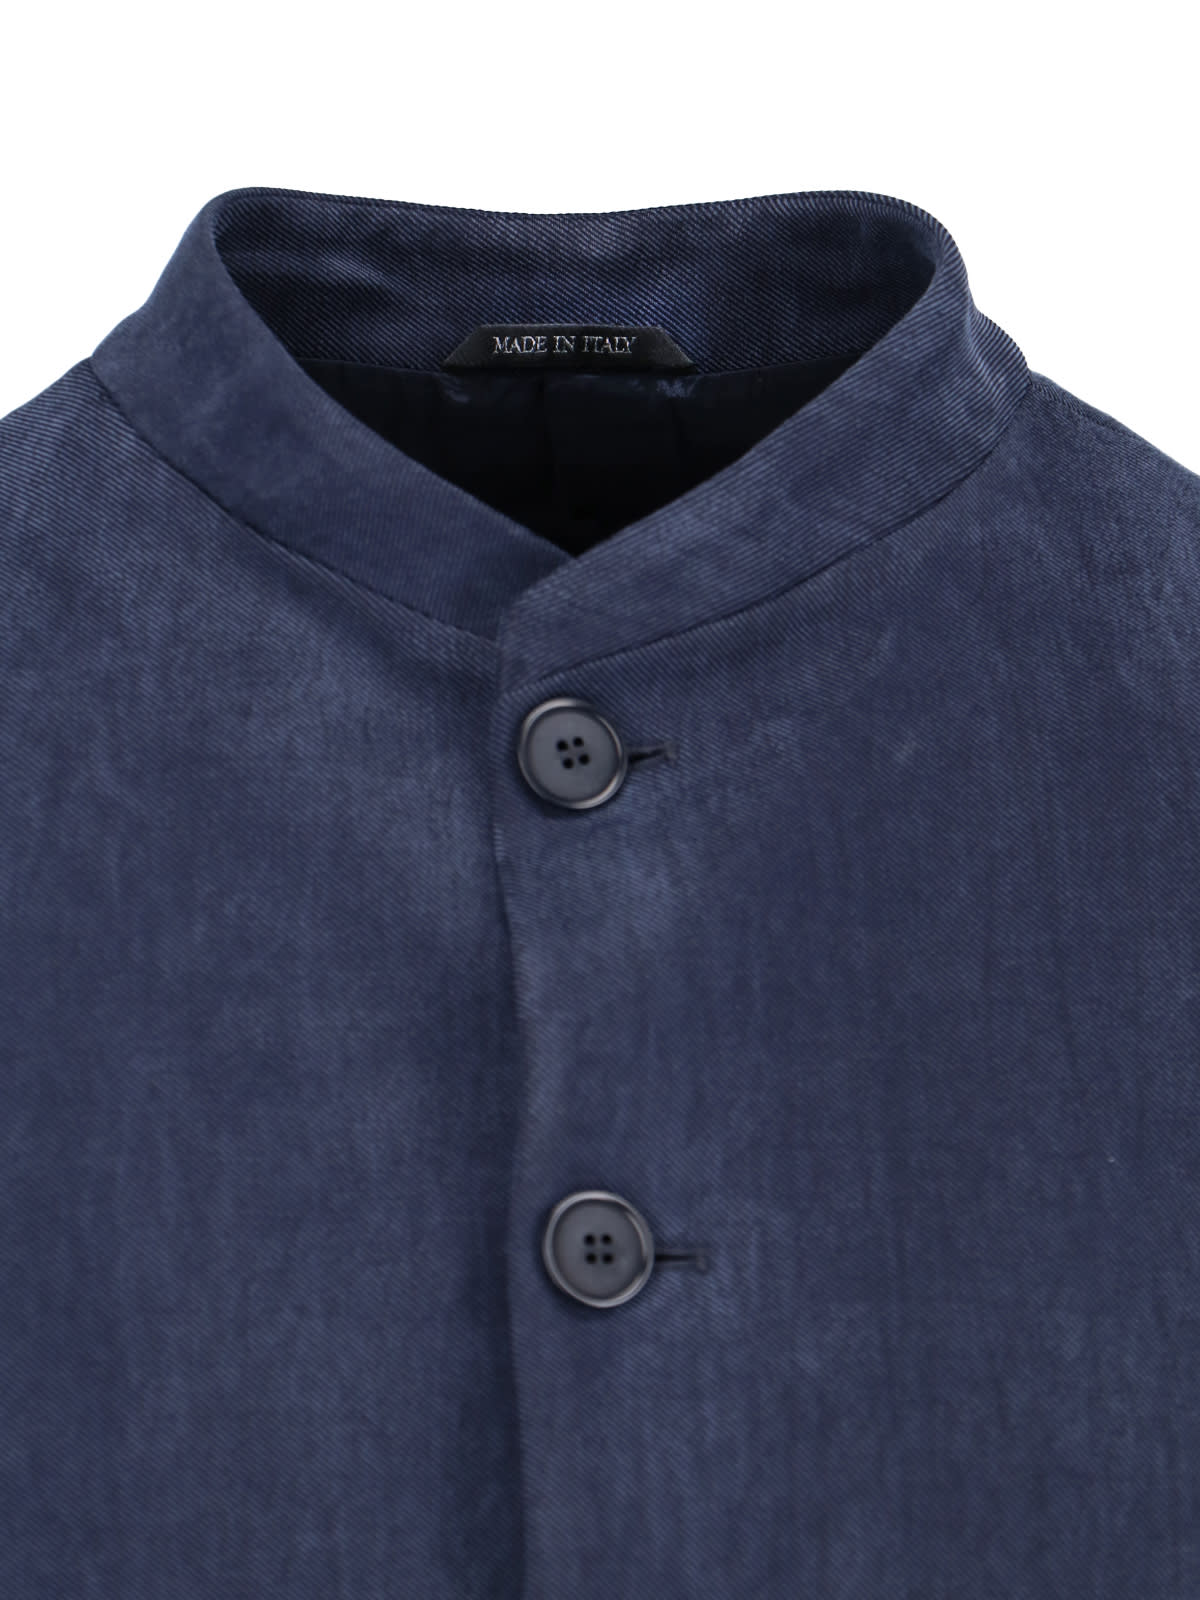 Shop Giorgio Armani Single-breasted Blazer In Blu